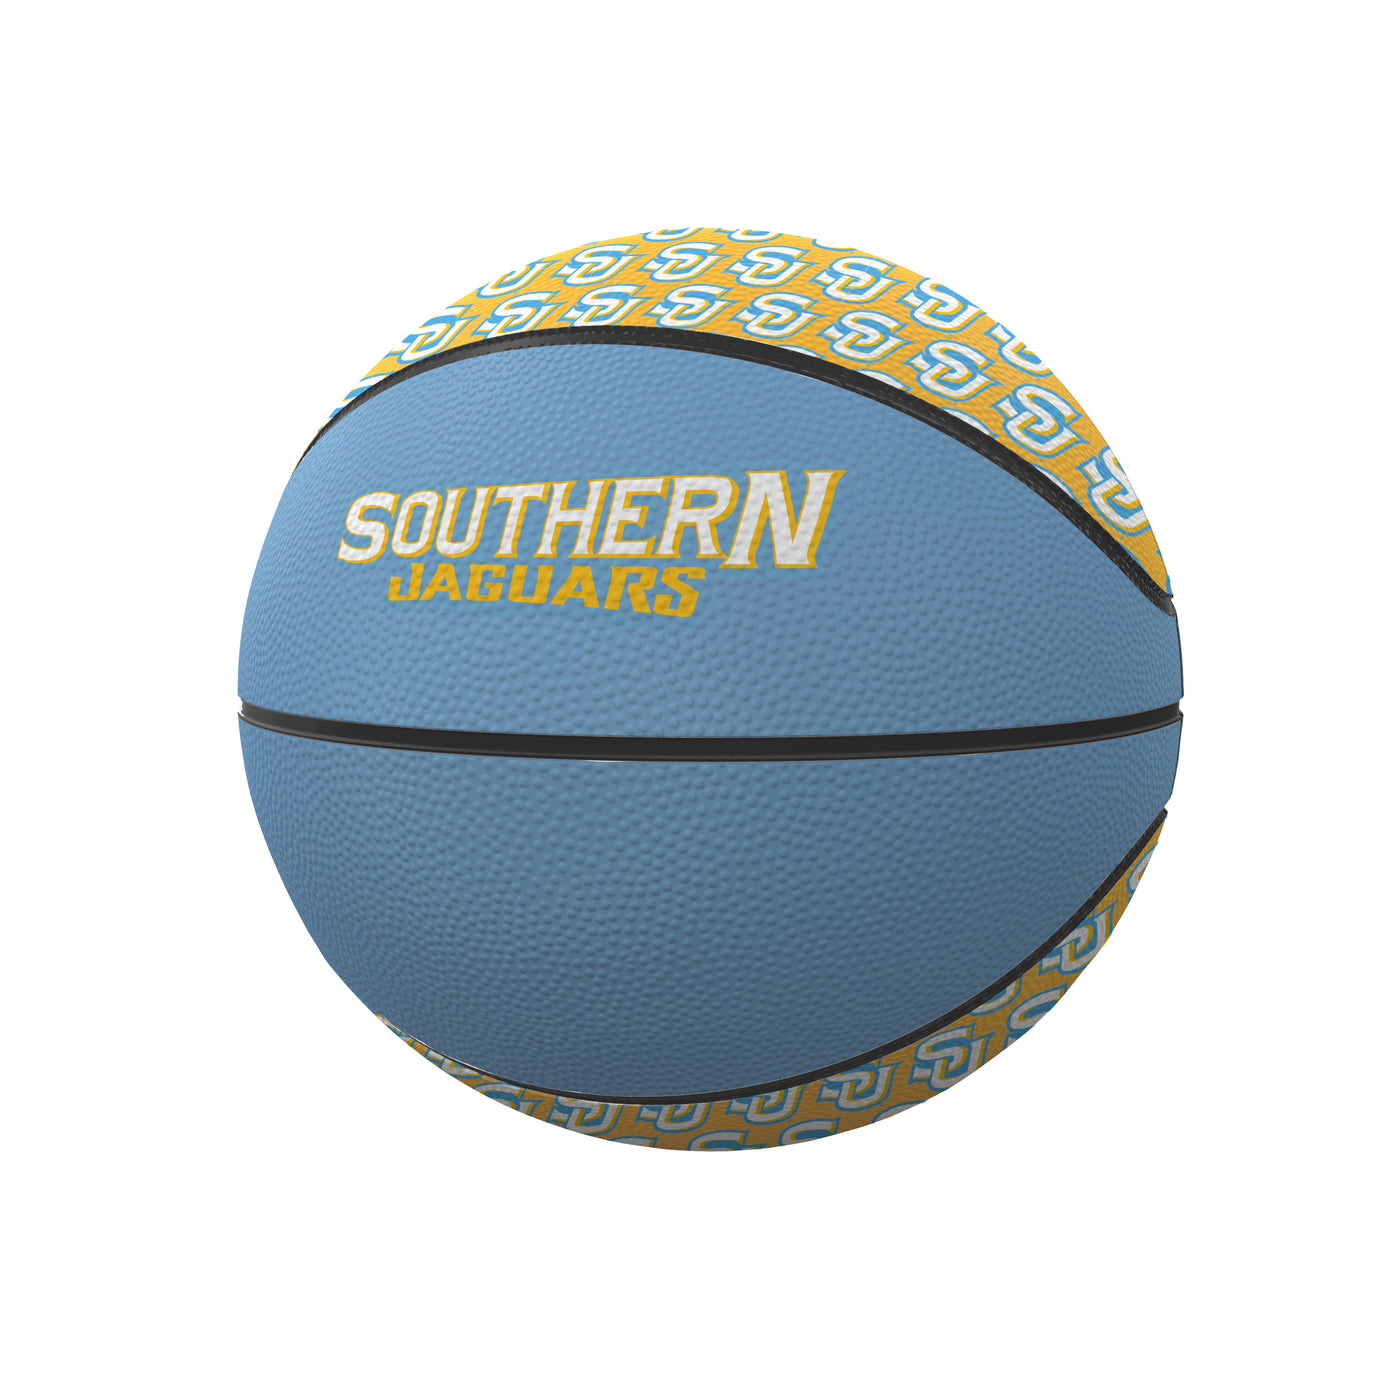 Southern University Mini Size Rubber Basketball